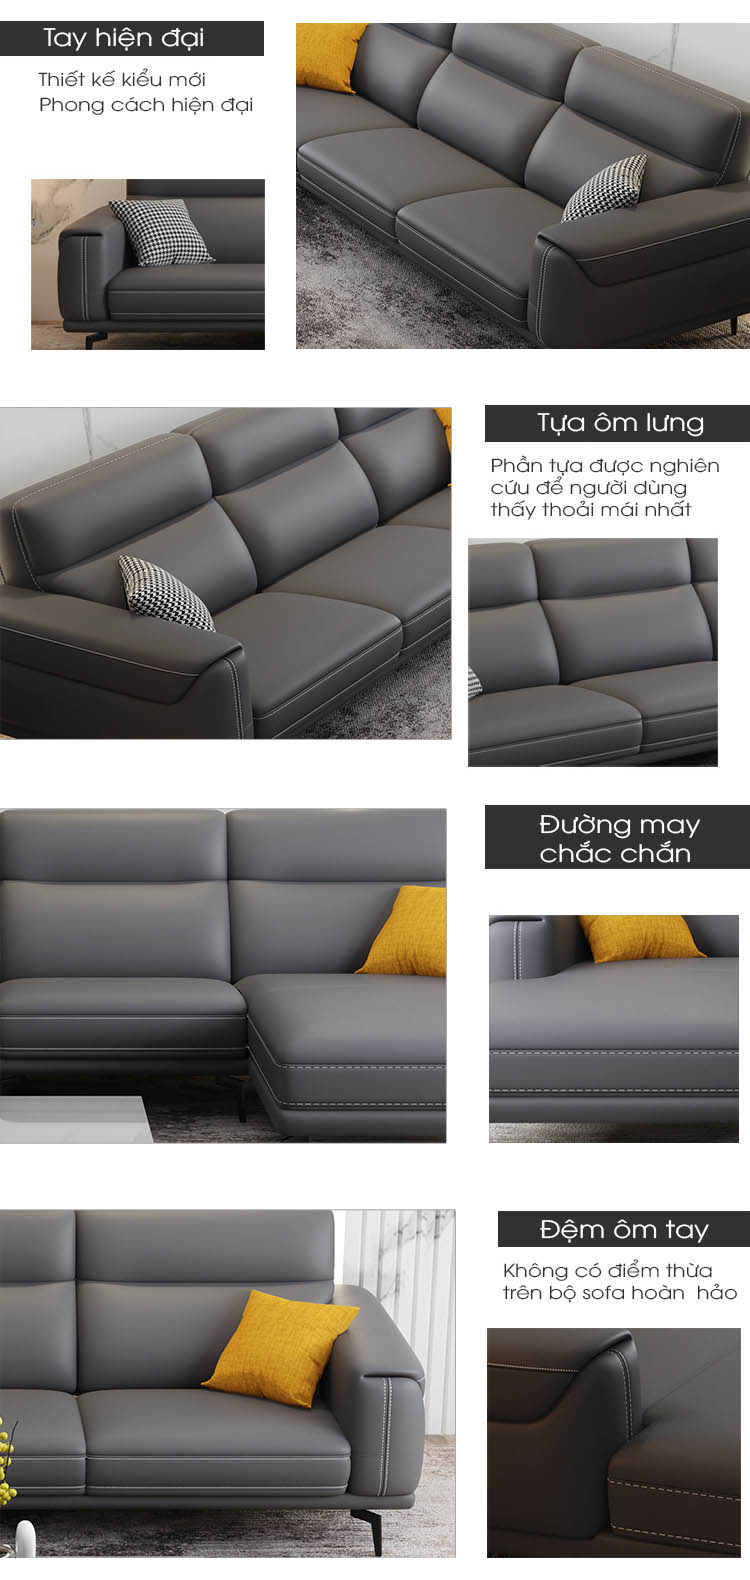 Đặc điểm nổi bật của bộ sofa da phòng khách